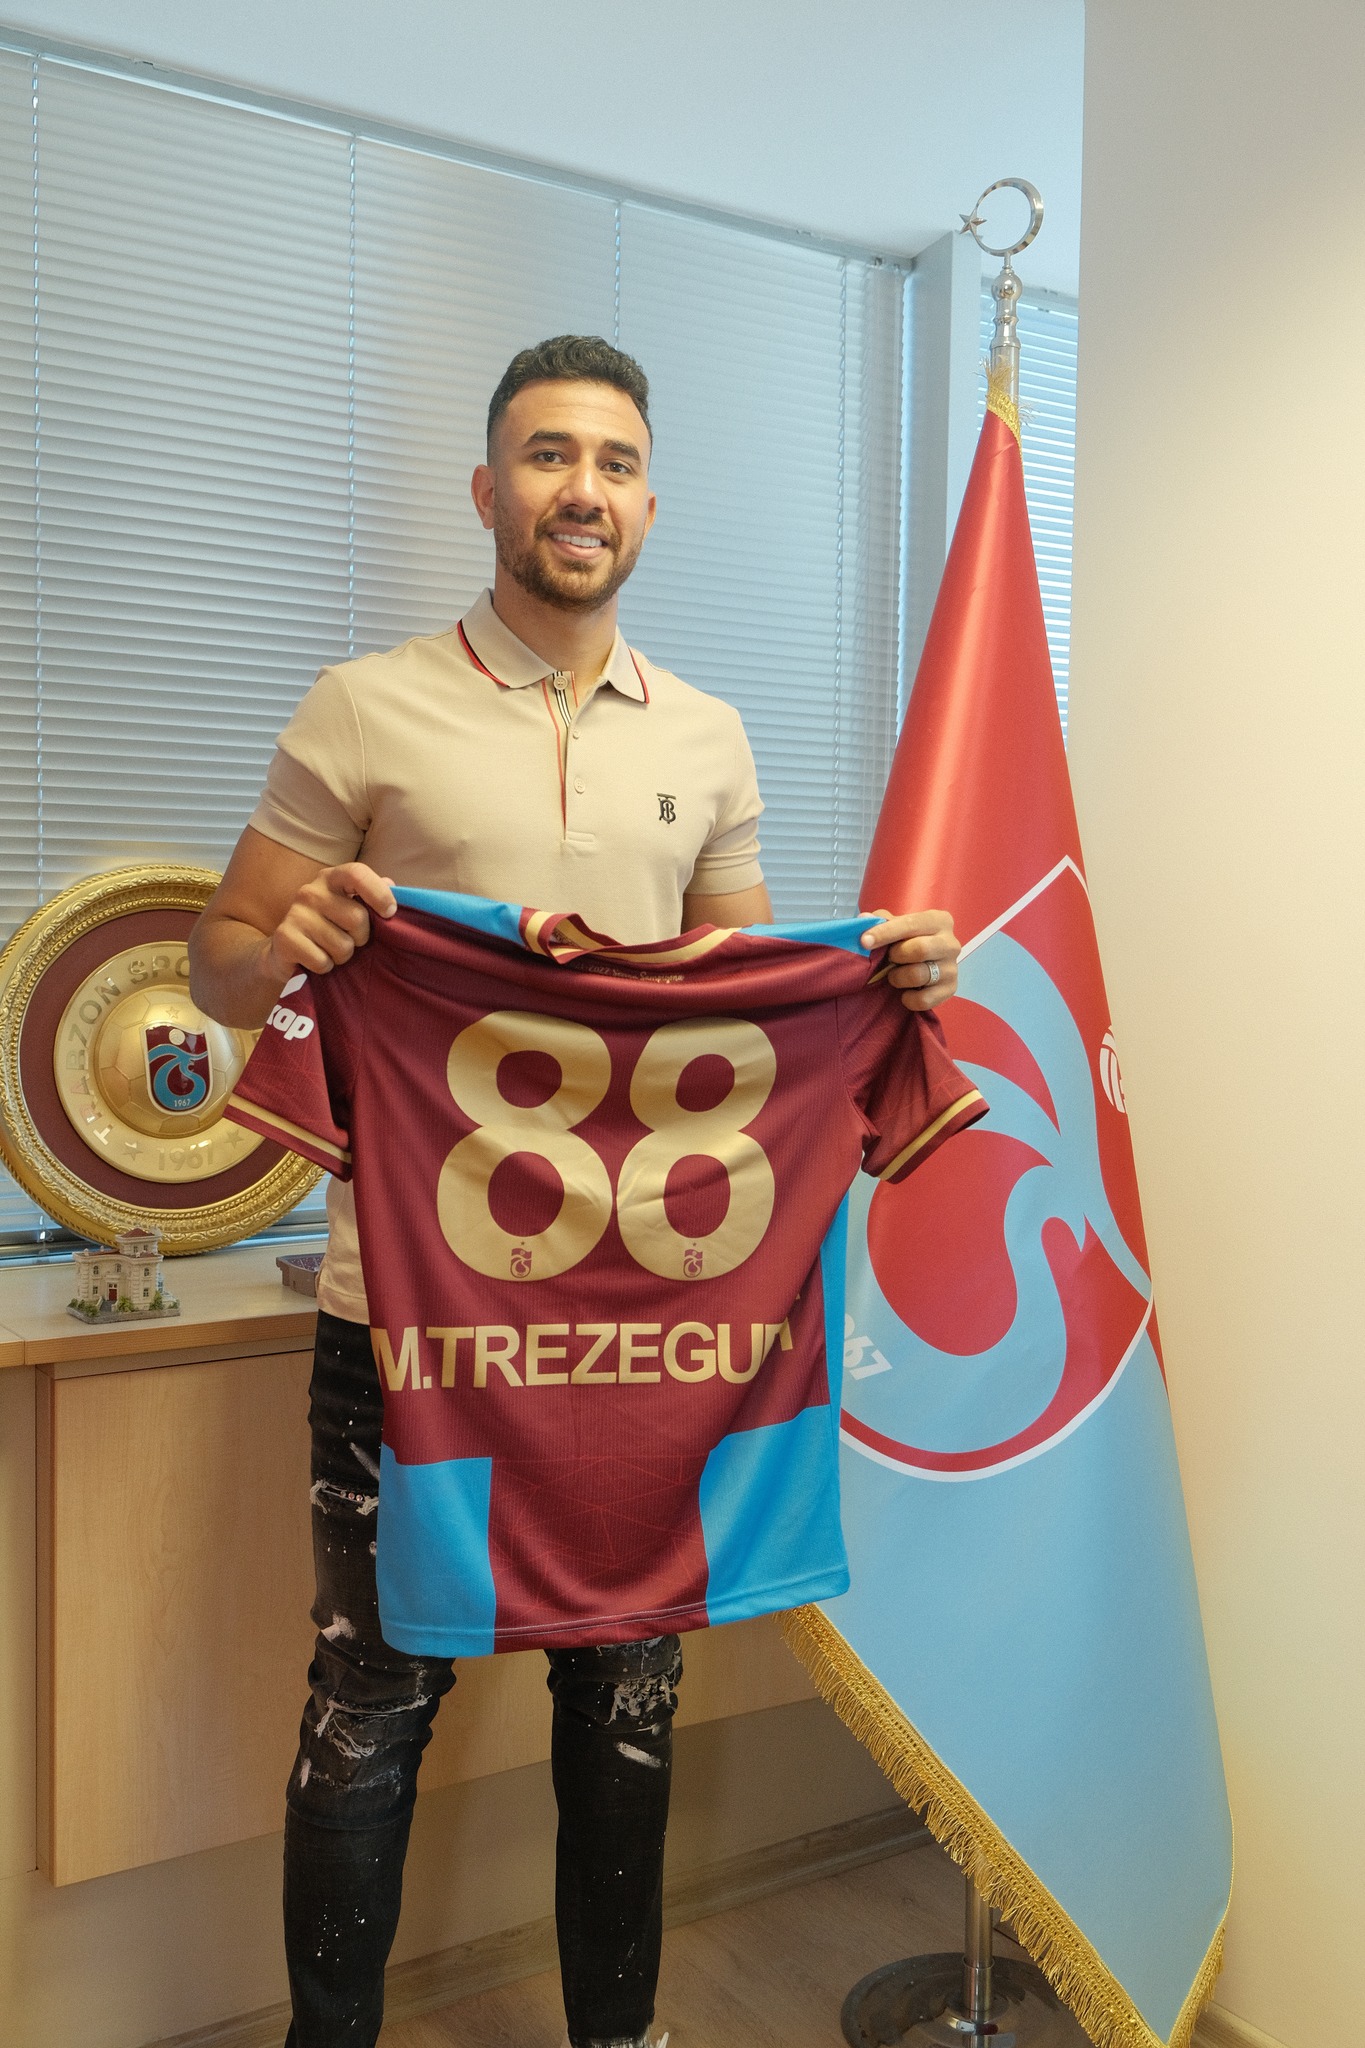 تريزيجيه يوقع عقد انتقاله لنادي طرابزون التركي "شاهد" 2